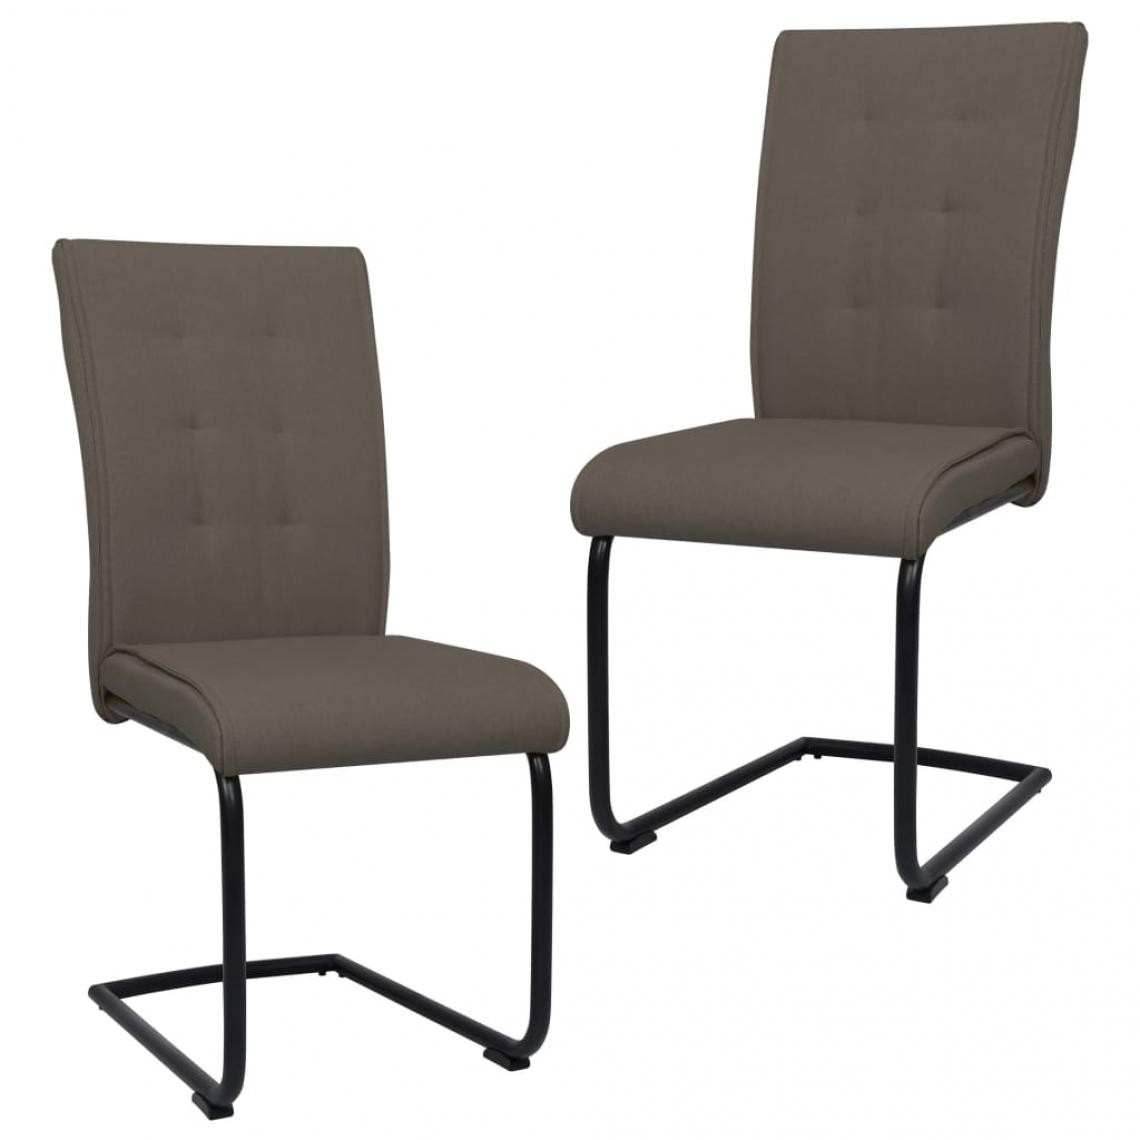 Decoshop26 - Lot de 2 chaises de salle à manger cuisine cantilever design moderne tissu taupe CDS020391 - Chaises